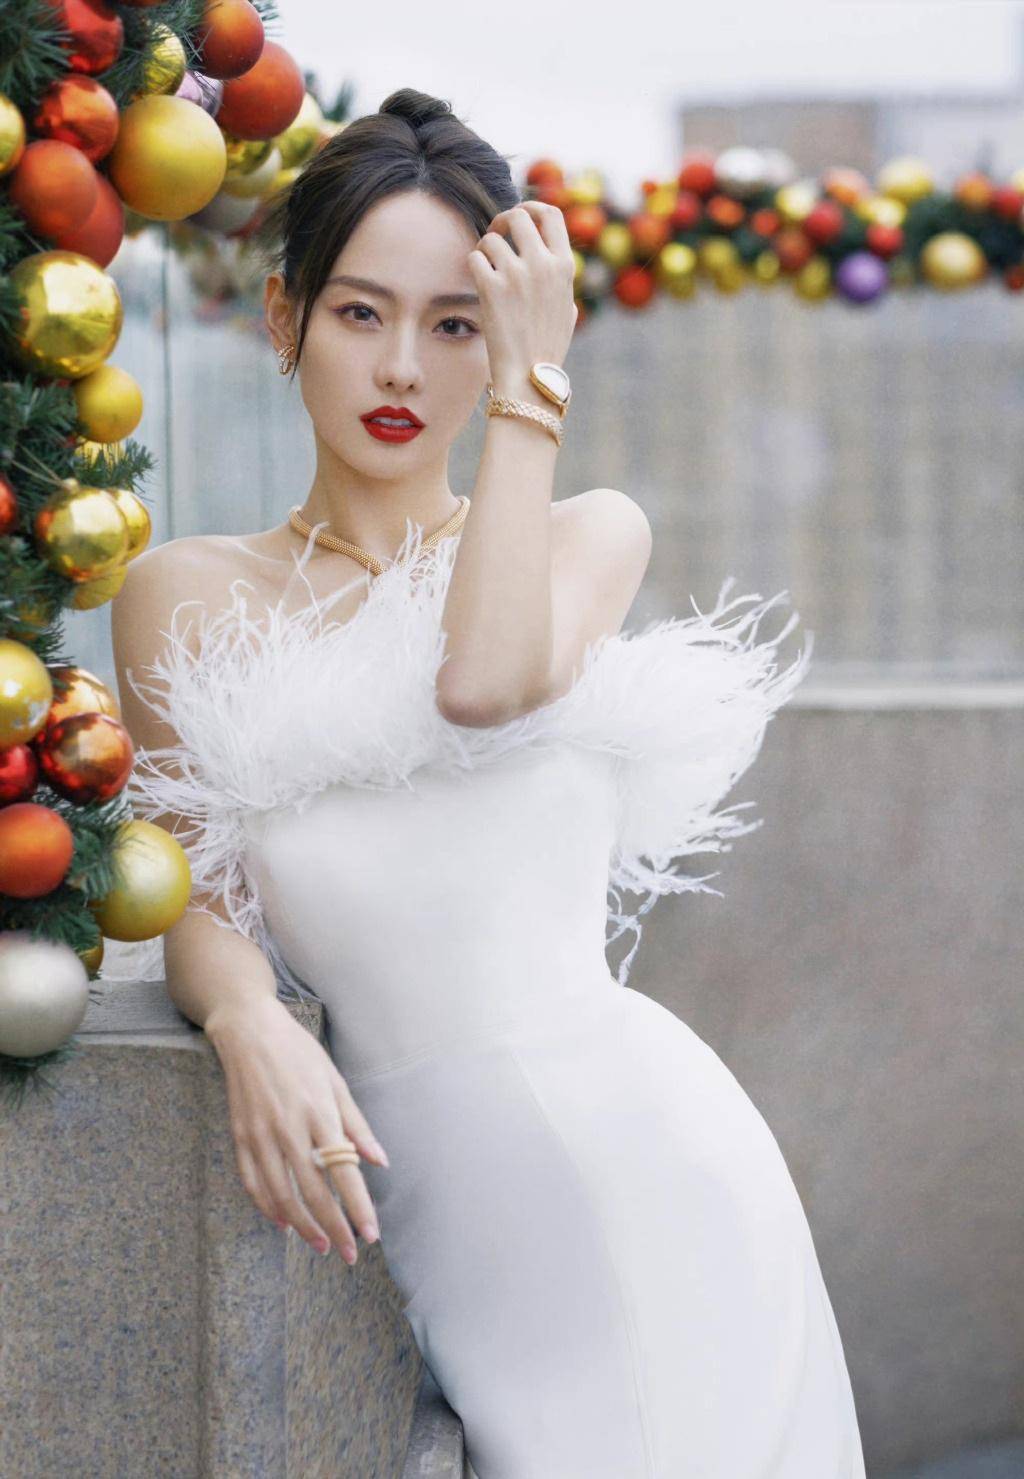 张嘉倪用三款羽毛裙演绎完美冬日时尚风,仙气飘飘还超有国际范儿